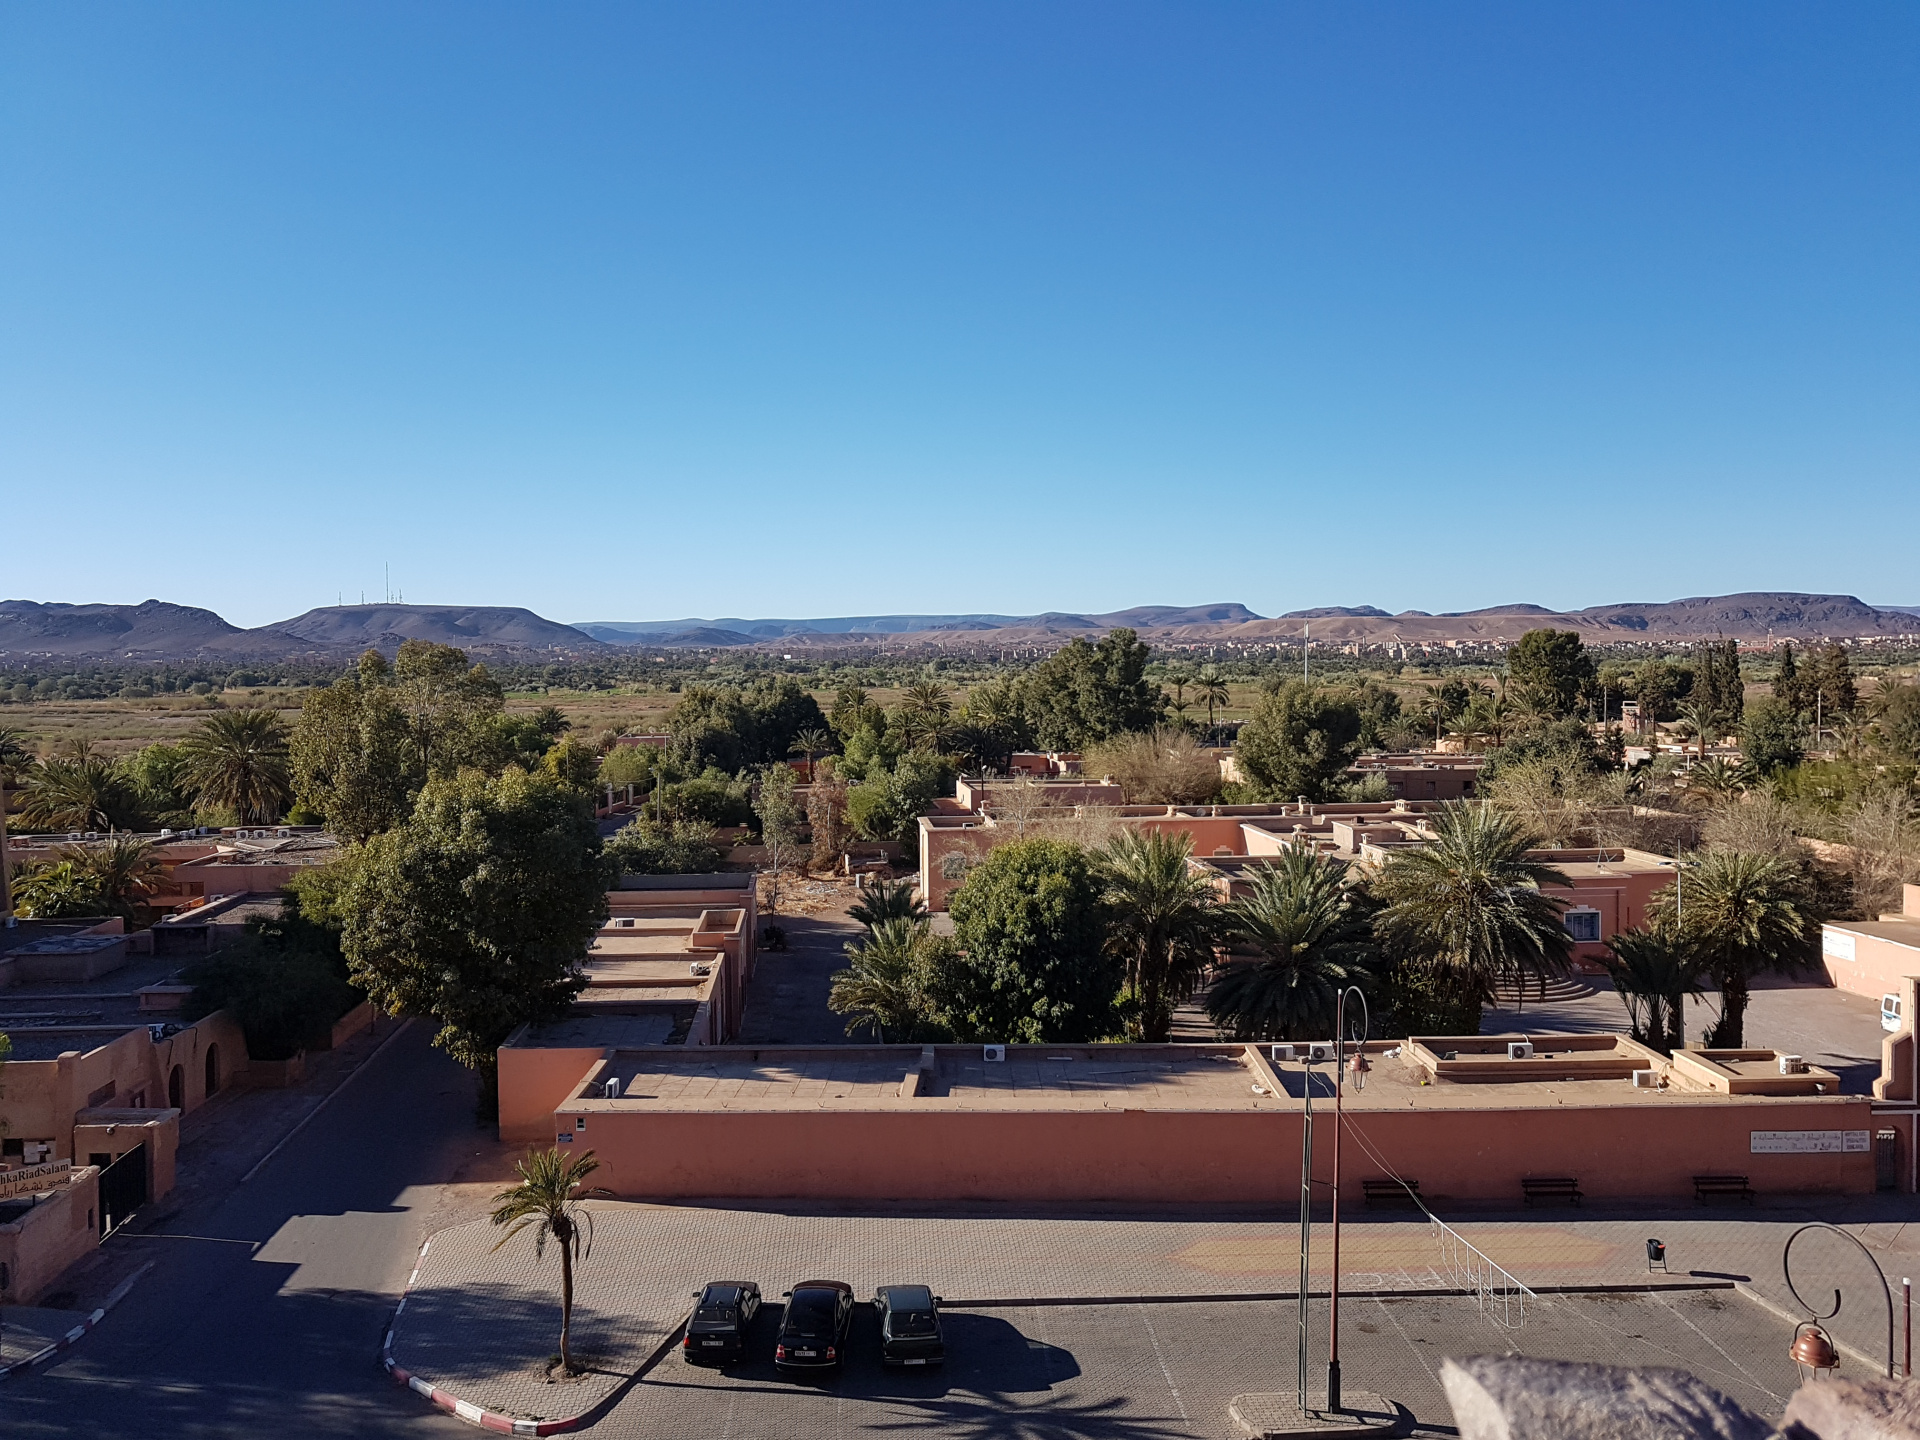 20180311-082111-Ouarzazate-SJ.jpg